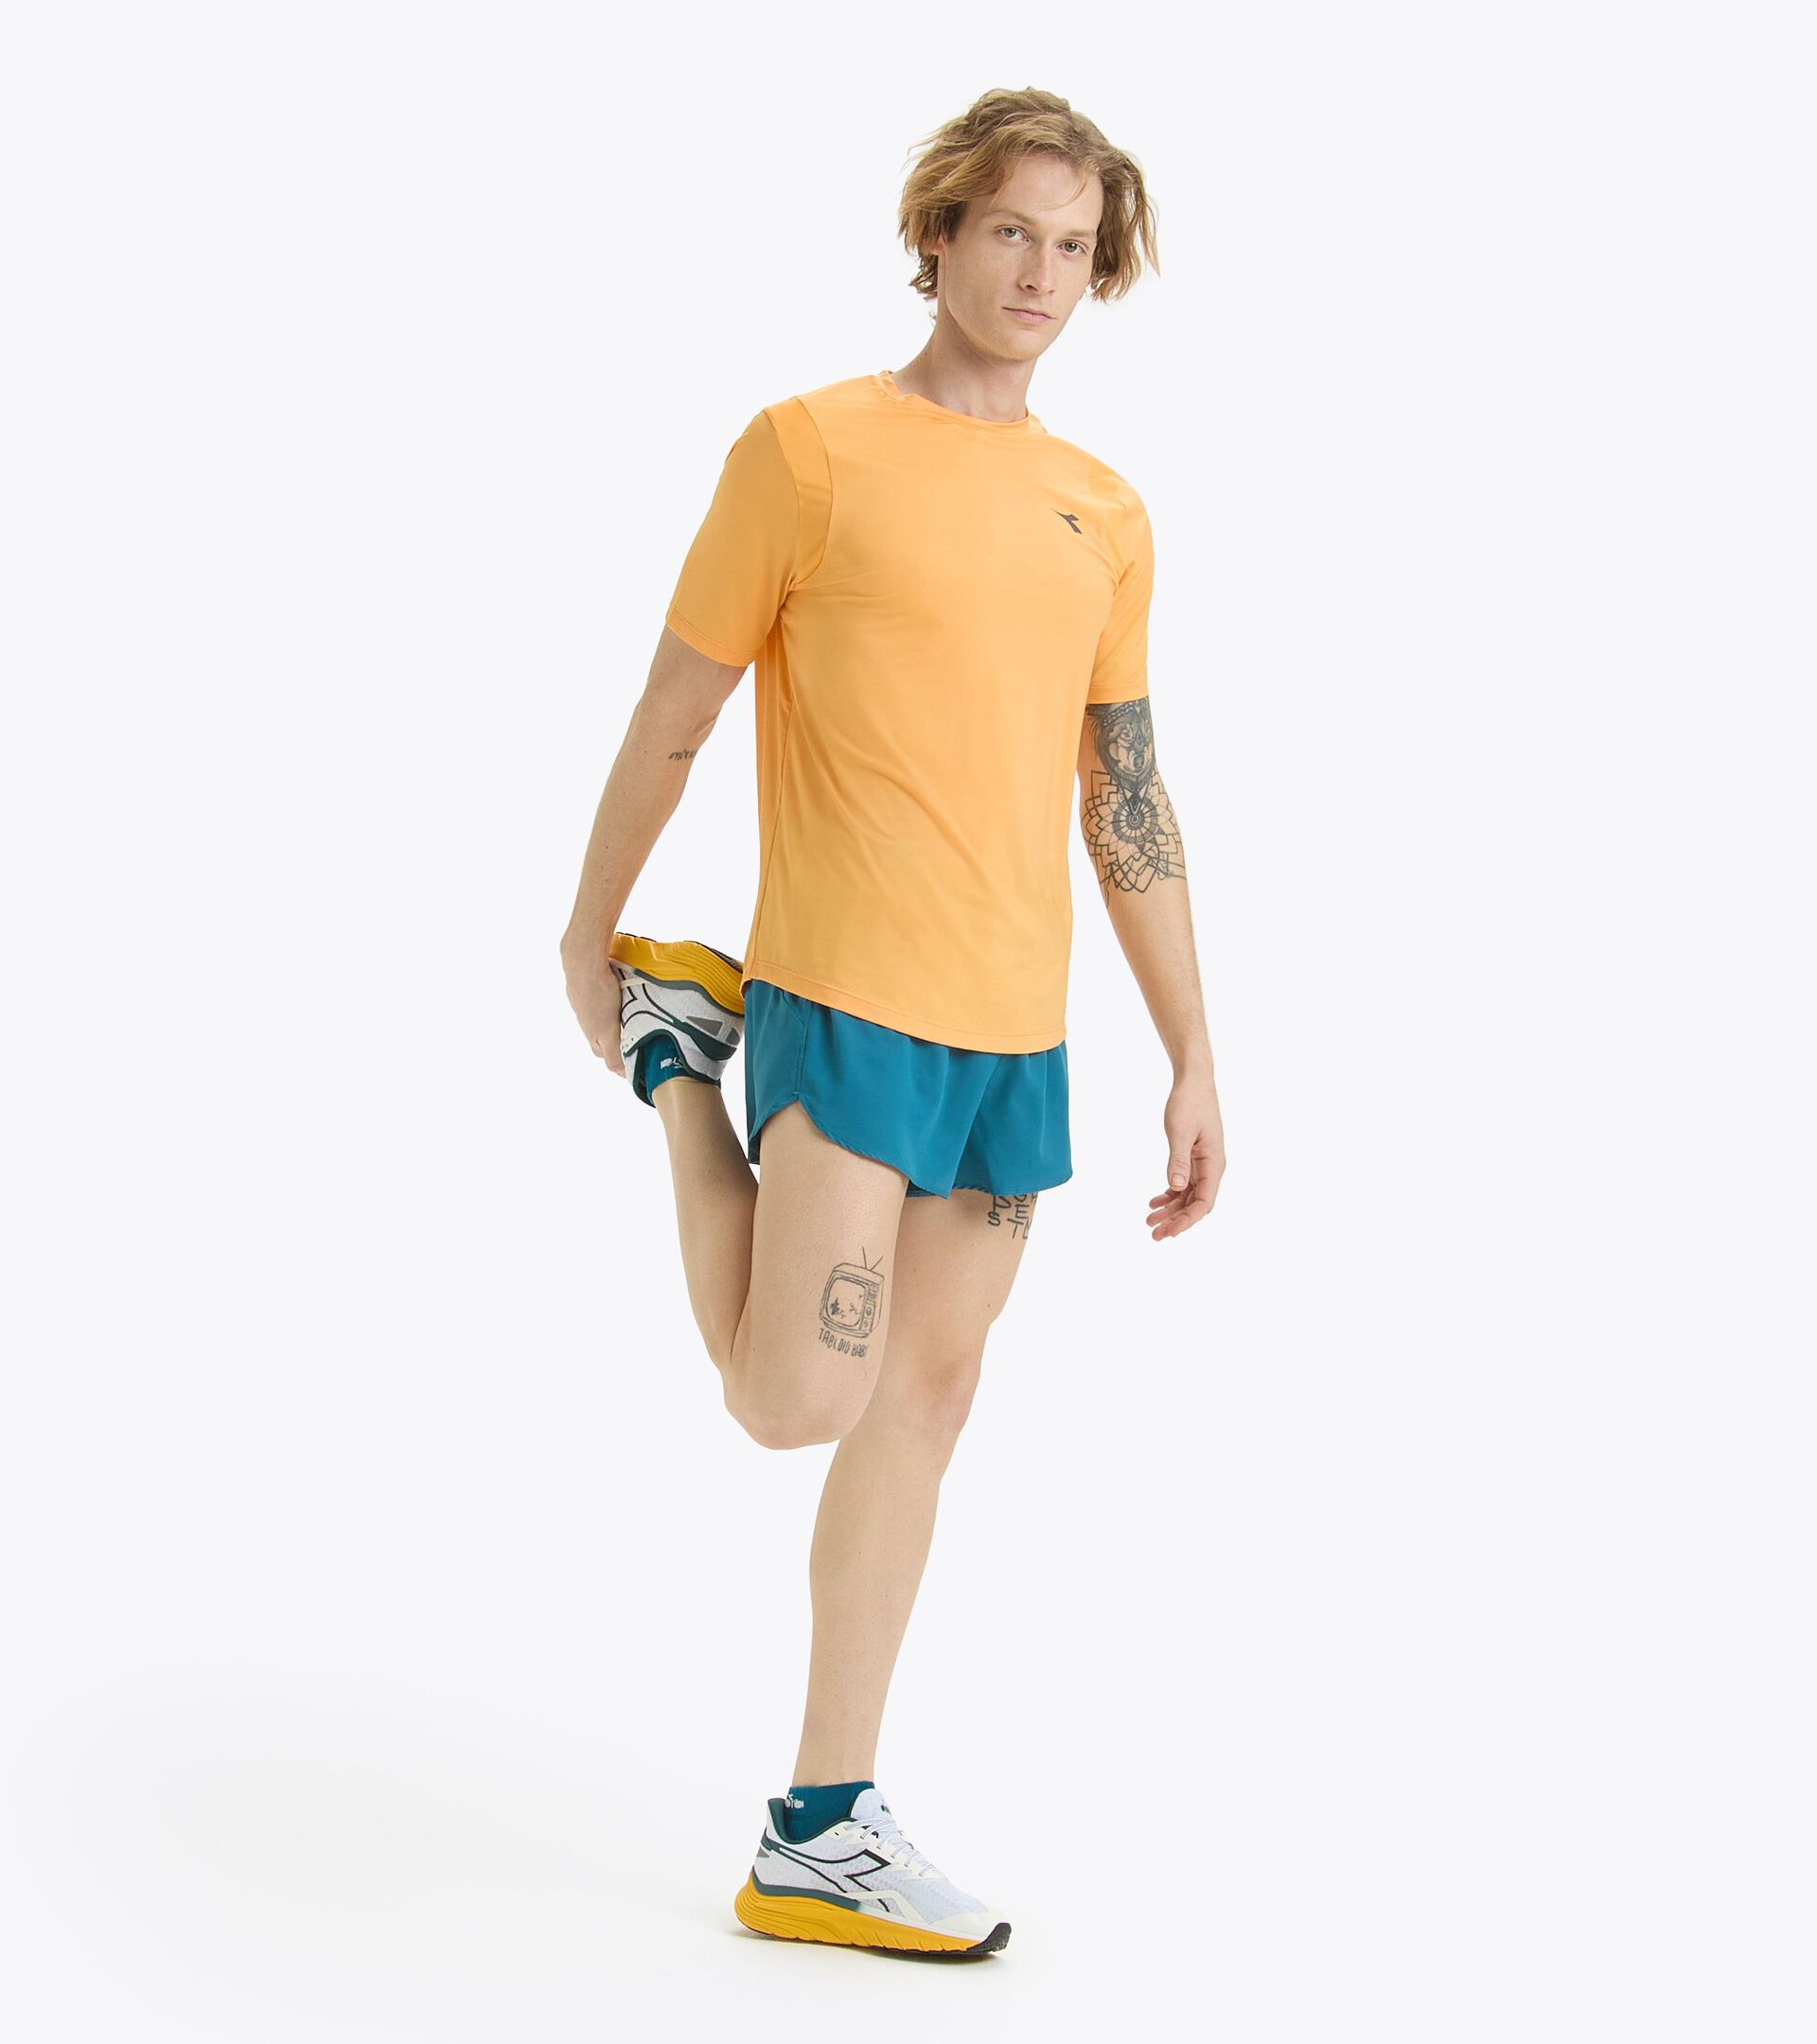 Running t-shirt - Men’s
 SS T-SHIRT TECH RUN CREW CO KUMQUAT - Diadora